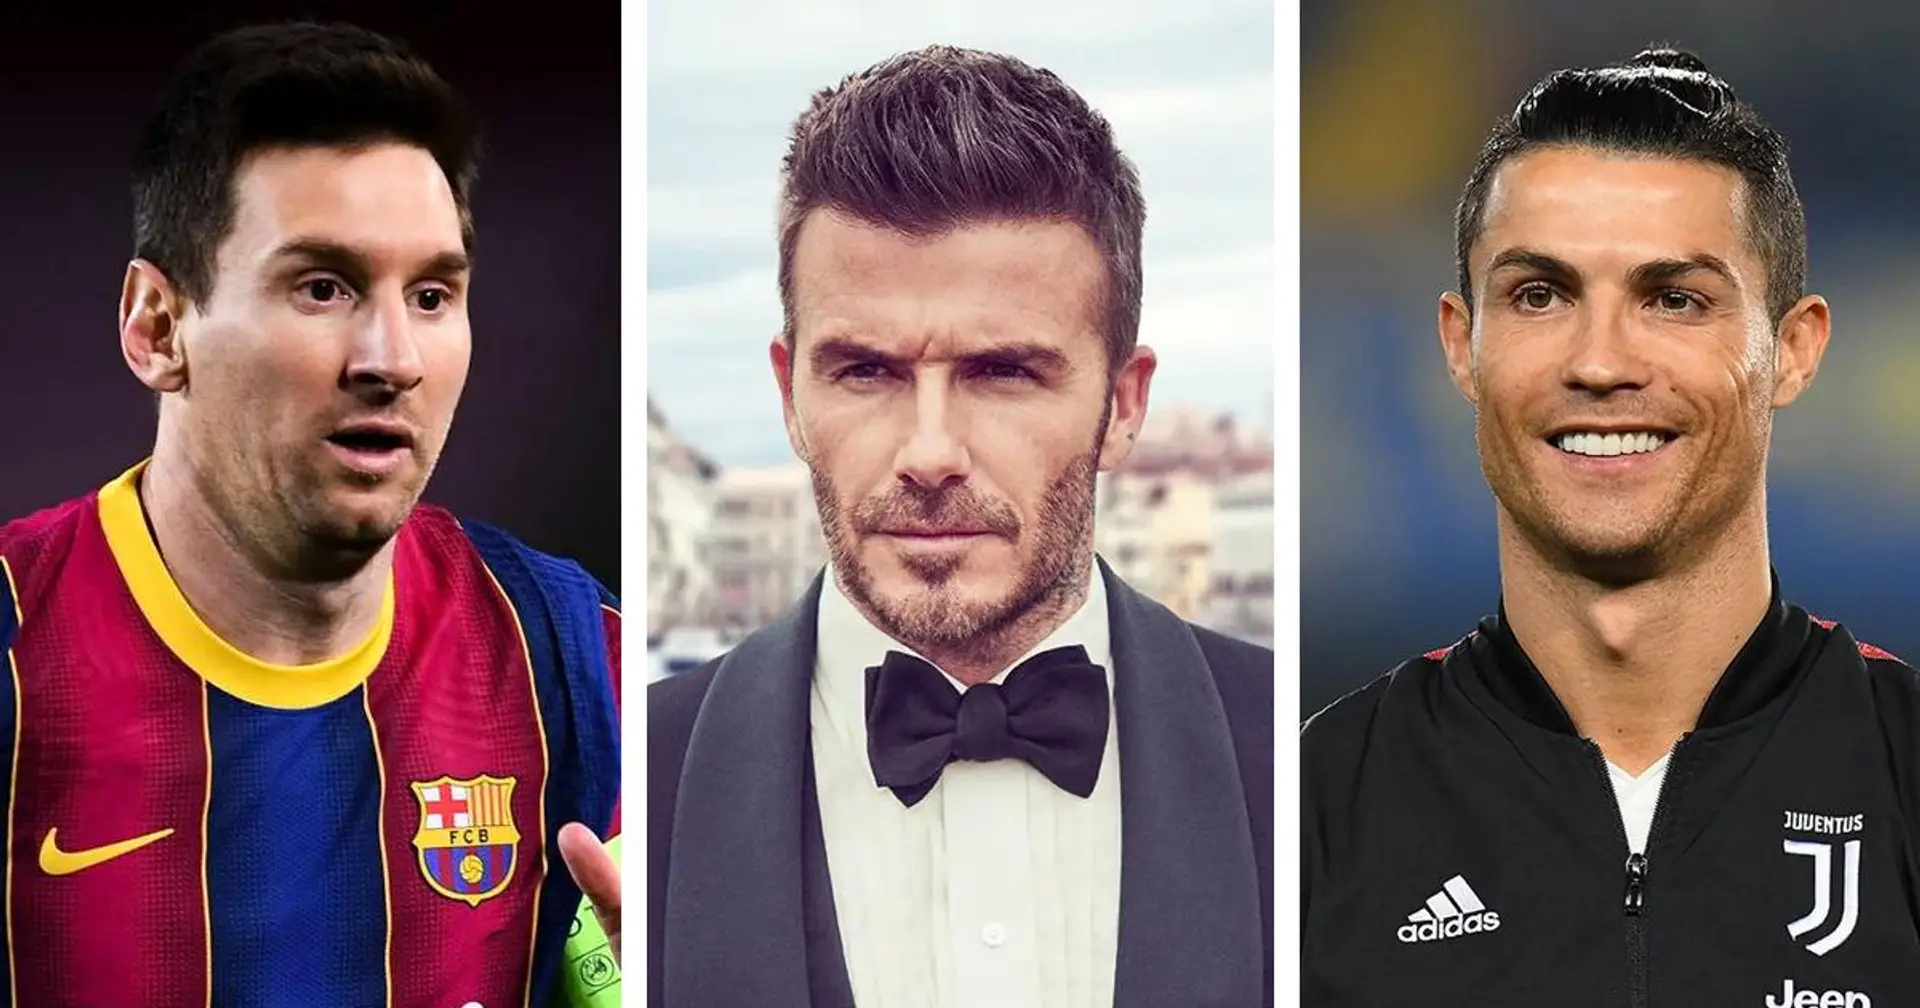 "Nos fans veulent voir de grandes stars": Beckham envisage de signer Ronaldo & Messi pour l'Inter Miami